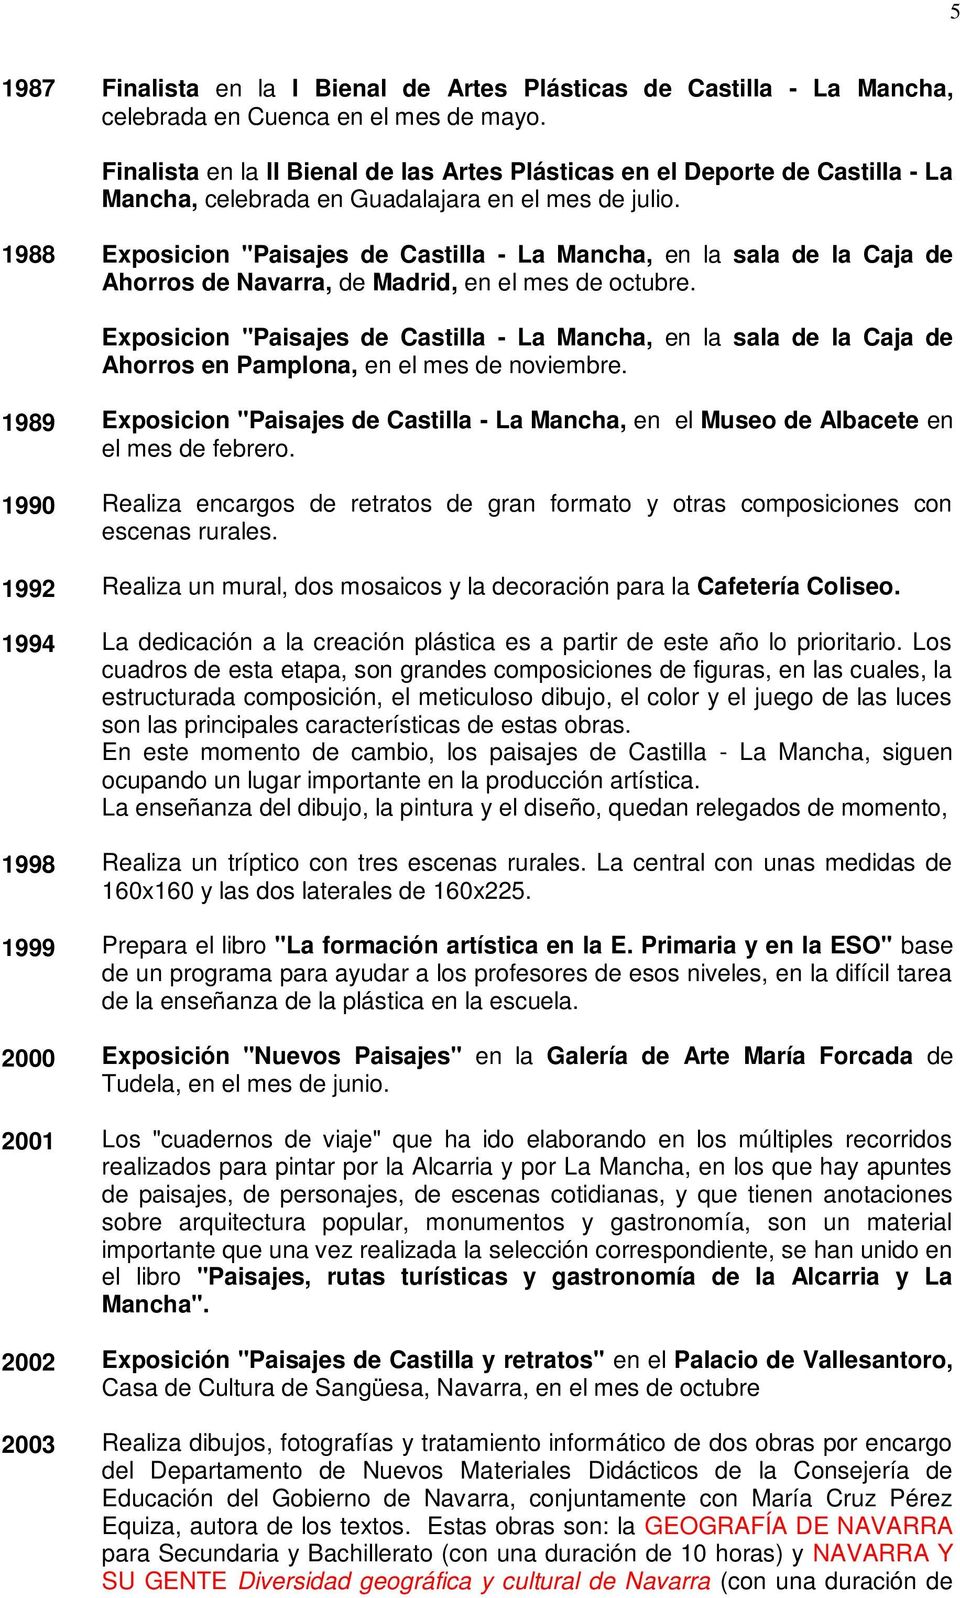 1988 Exposicion "Paisajes de Castilla - La Mancha, en la sala de la Caja de Ahorros de Navarra, de Madrid, en el mes de octubre.